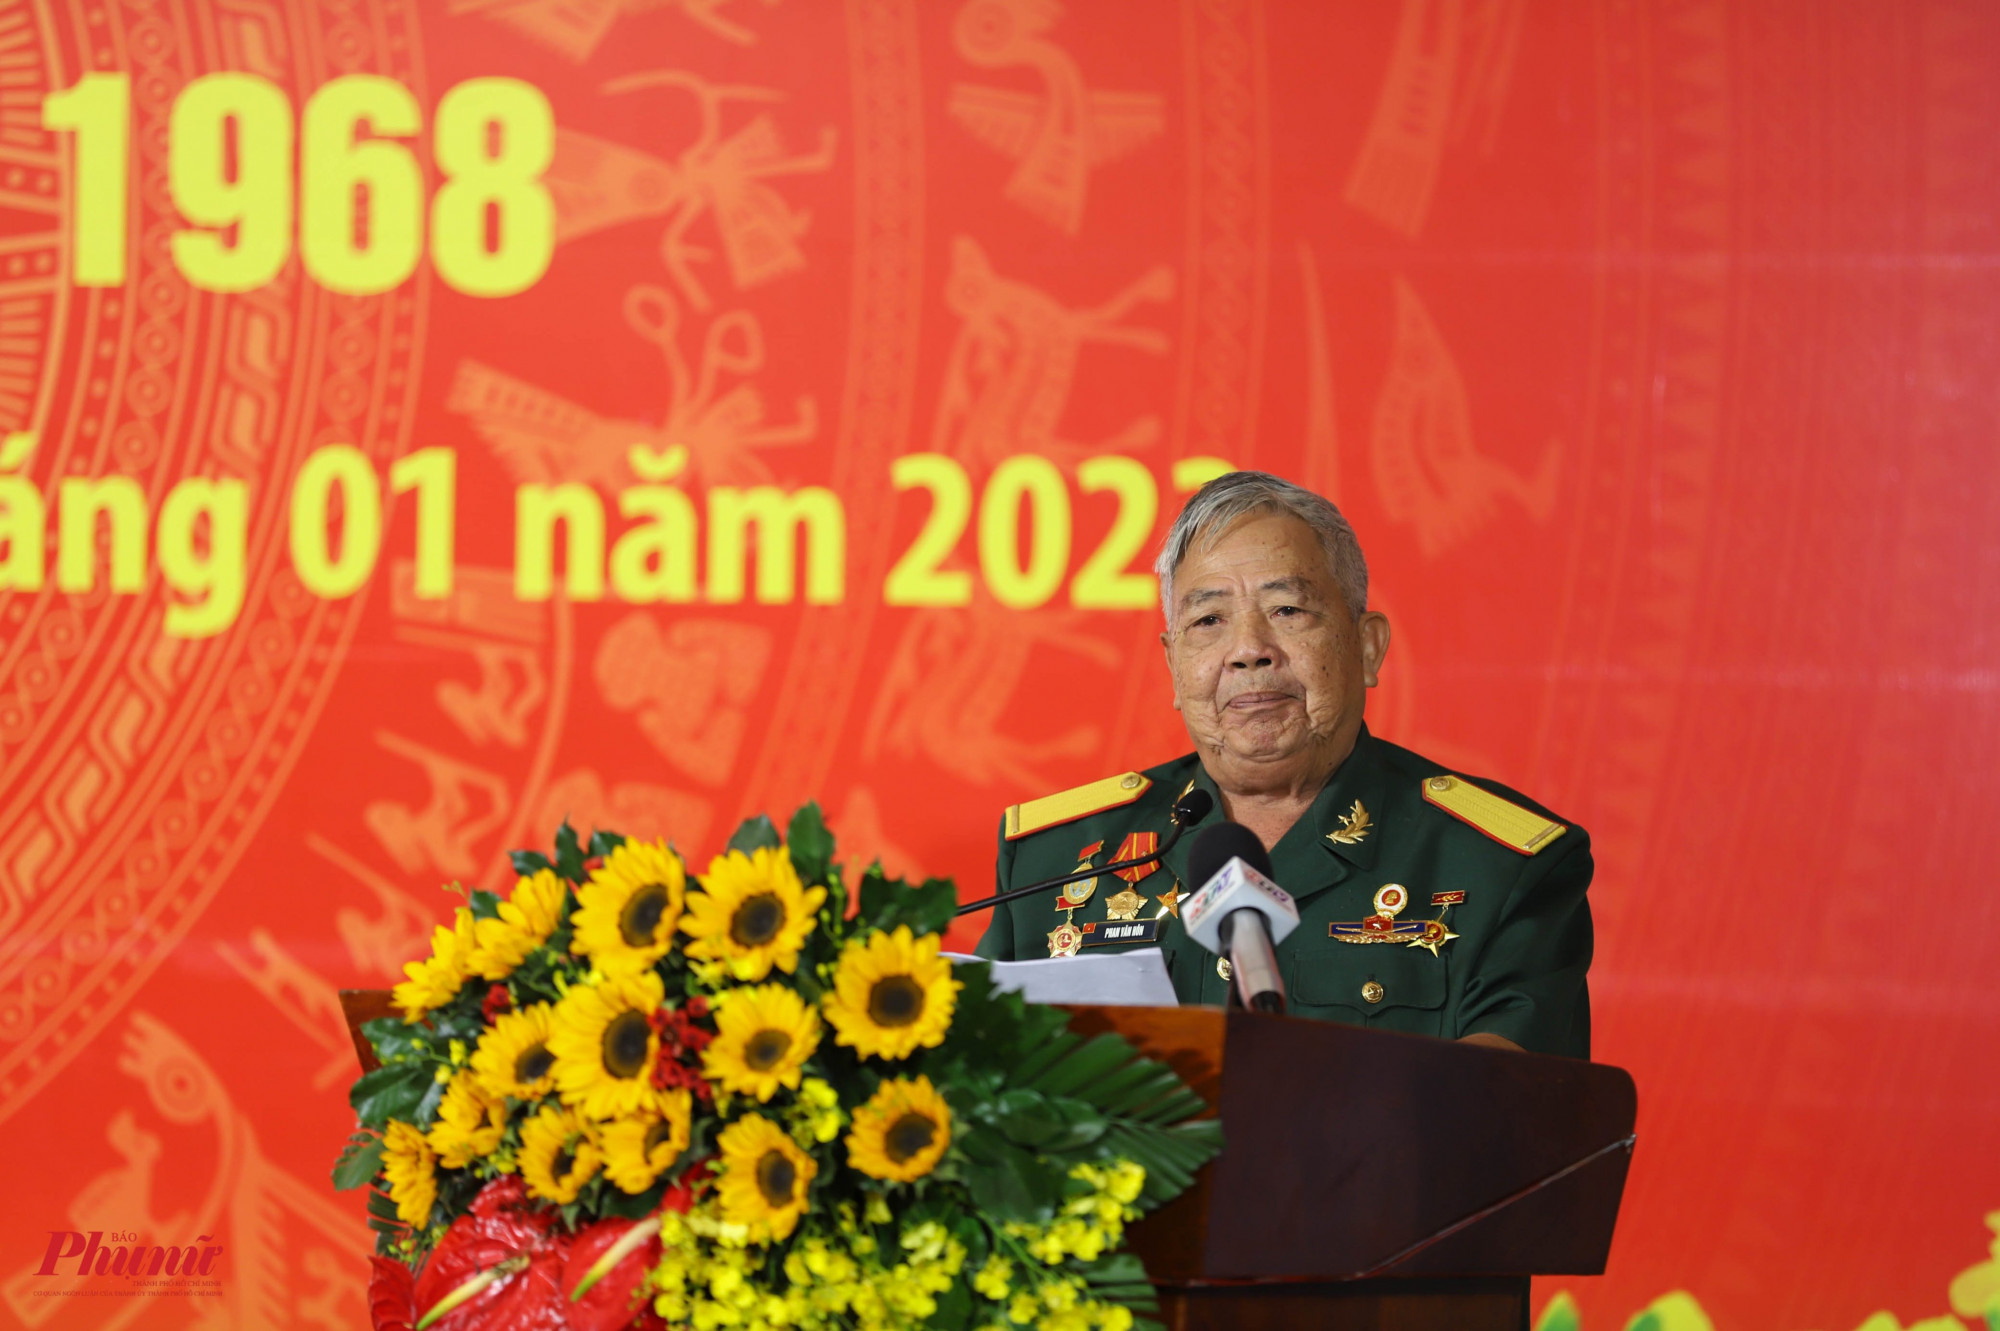 ông Phan Văn Hôn - Chiến đấu viên Đội 5 Biệt động Sài Gòn - kể lại những ký ức khó quên trong trận tấn công Dinh Độc Lập trong Tết Mậu Thân 1968 - - Ảnh: Tam Nguyên 